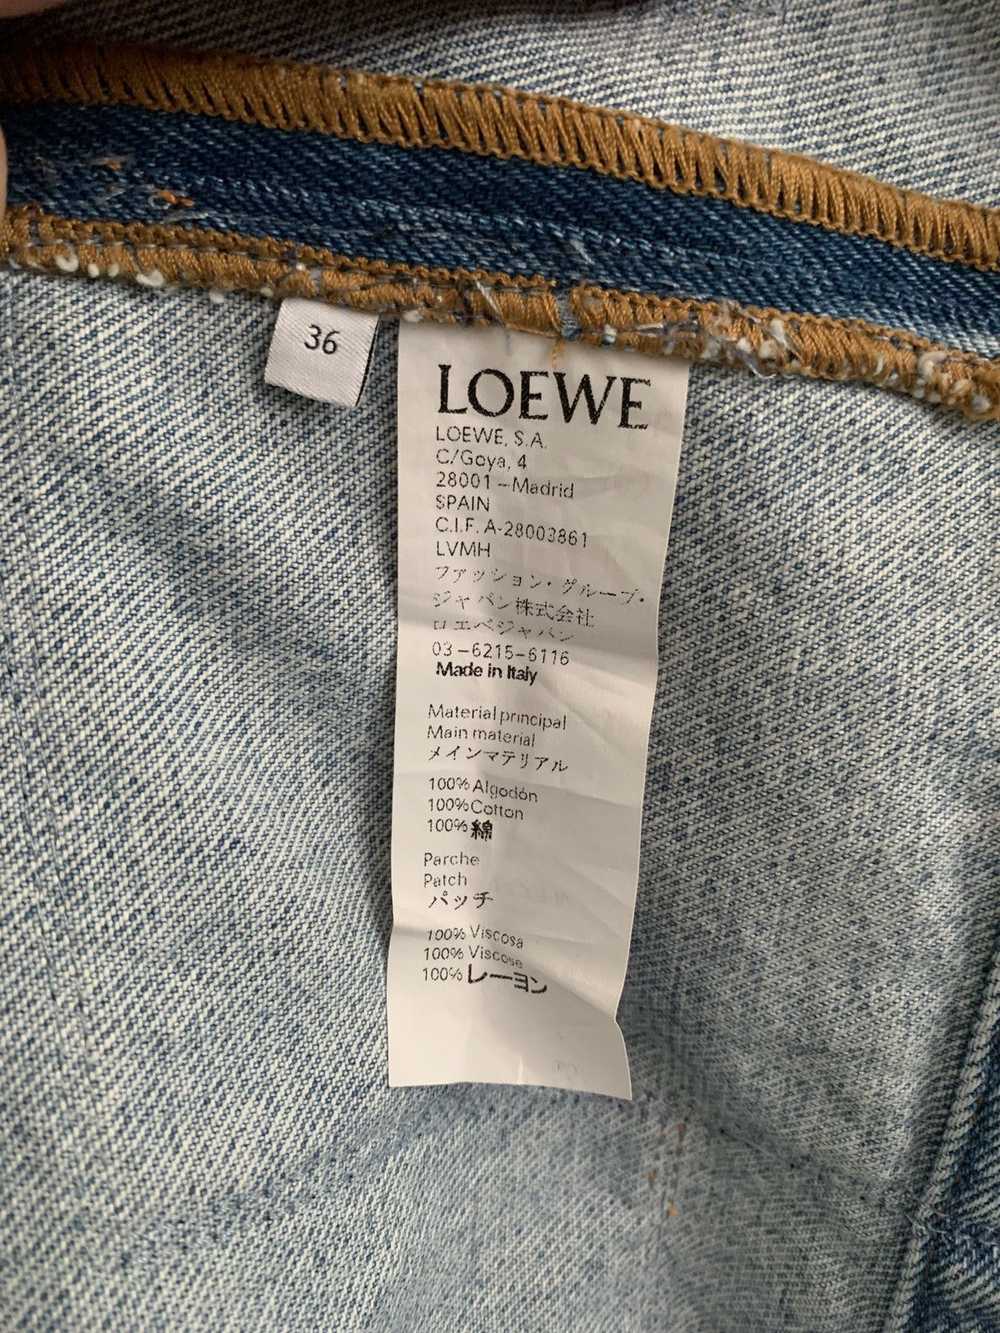 Loewe Loewe Paula’s Ibiza denim jacket - image 3